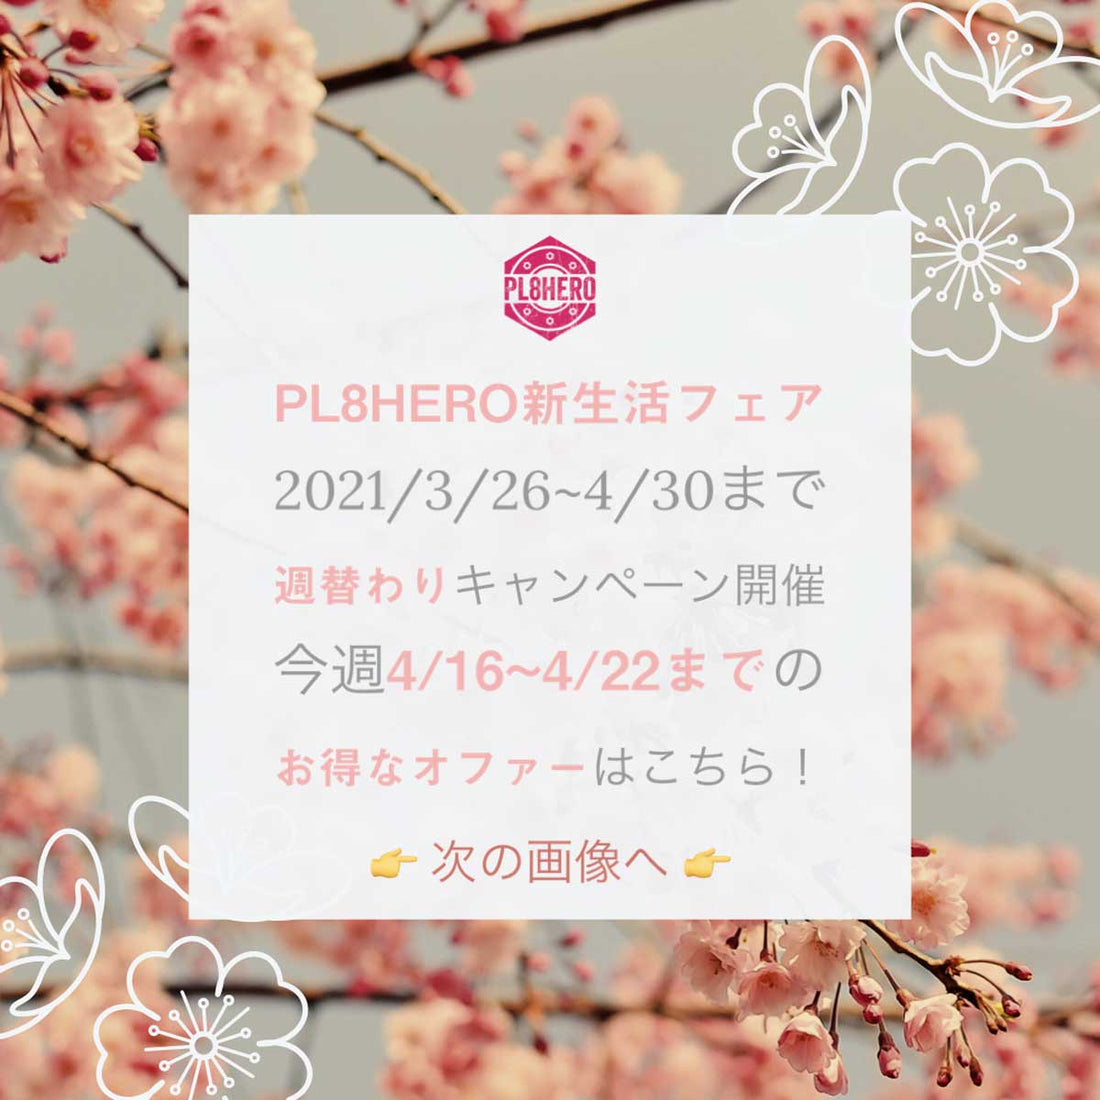 【4/16~4/22まで】4th Week @ PL8HERO新生活フェア・お得なキャンペーンが盛りだくさん！ | PL8HERO